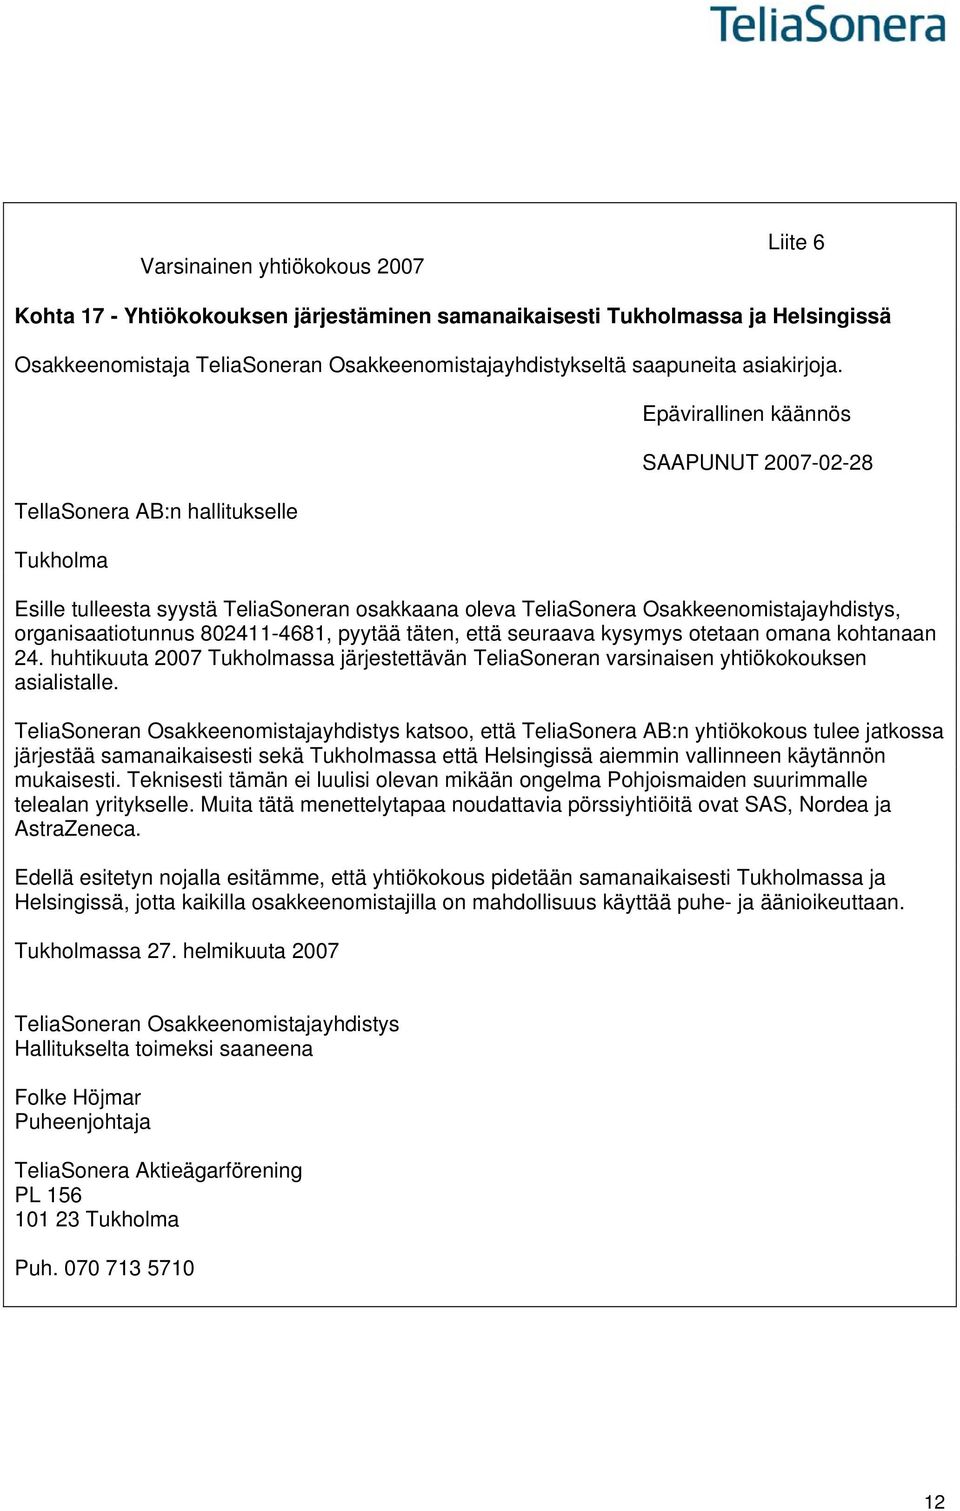 TellaSonera AB:n hallitukselle Tukholma Epävirallinen käännös SAAPUNUT 2007-02-28 Esille tulleesta syystä TeliaSoneran osakkaana oleva TeliaSonera Osakkeenomistajayhdistys, organisaatiotunnus